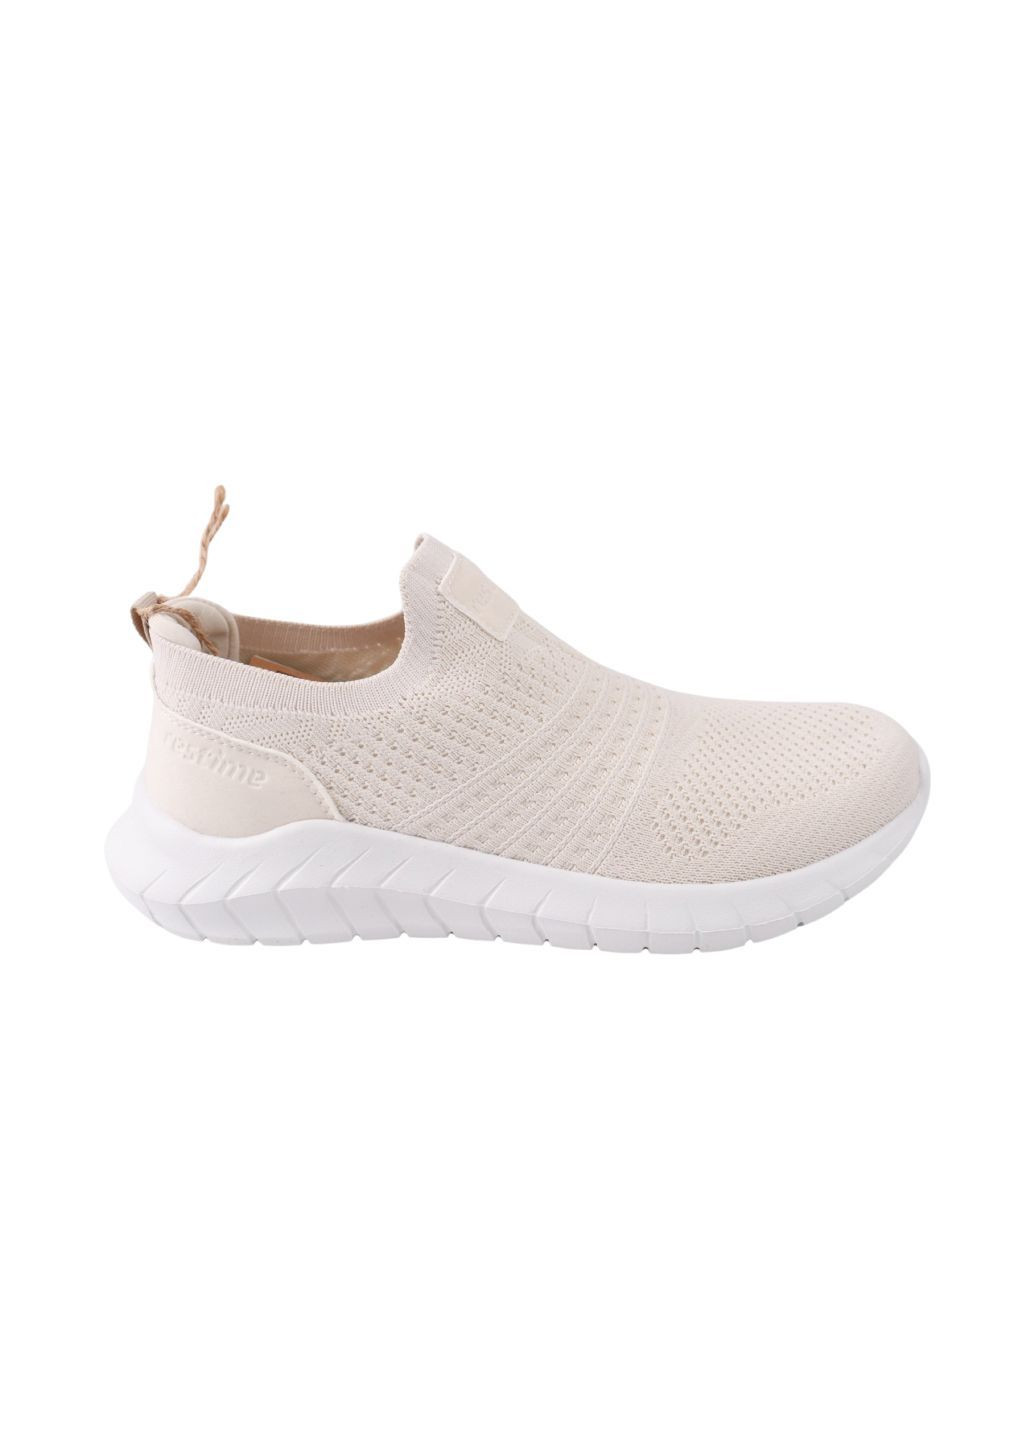 Білі кросівки жіночі молочні текстиль Restime 257-24LK